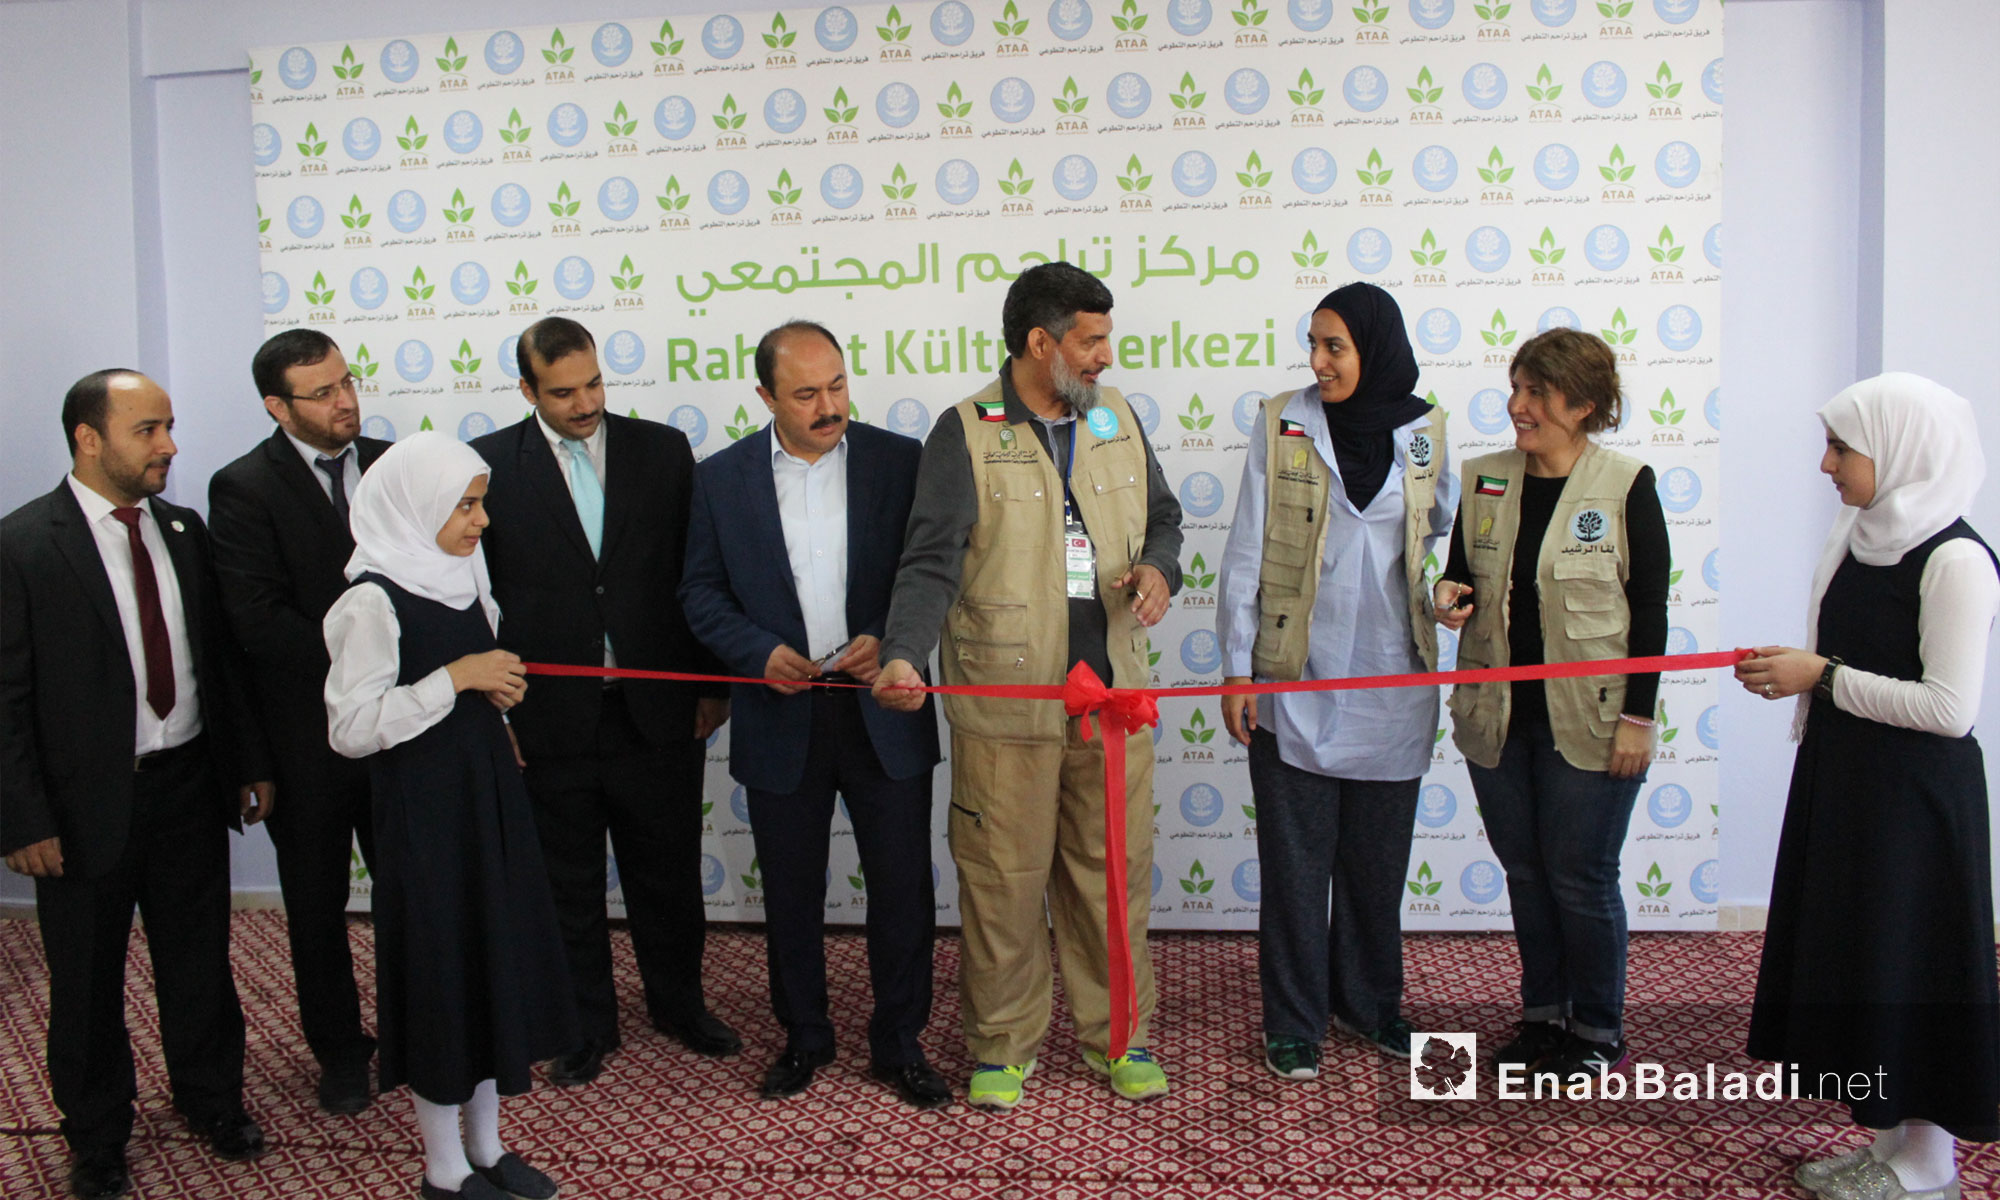 افتتاح مركز "تراحم 2" المجتمعي في مدينة أورفة التركية برعاية جمعية "عطاء" للإغاثة الإنسانية وفريق "تراحم" الكويتي - 27 تشرين الأول 2017 (عنب بلدي)